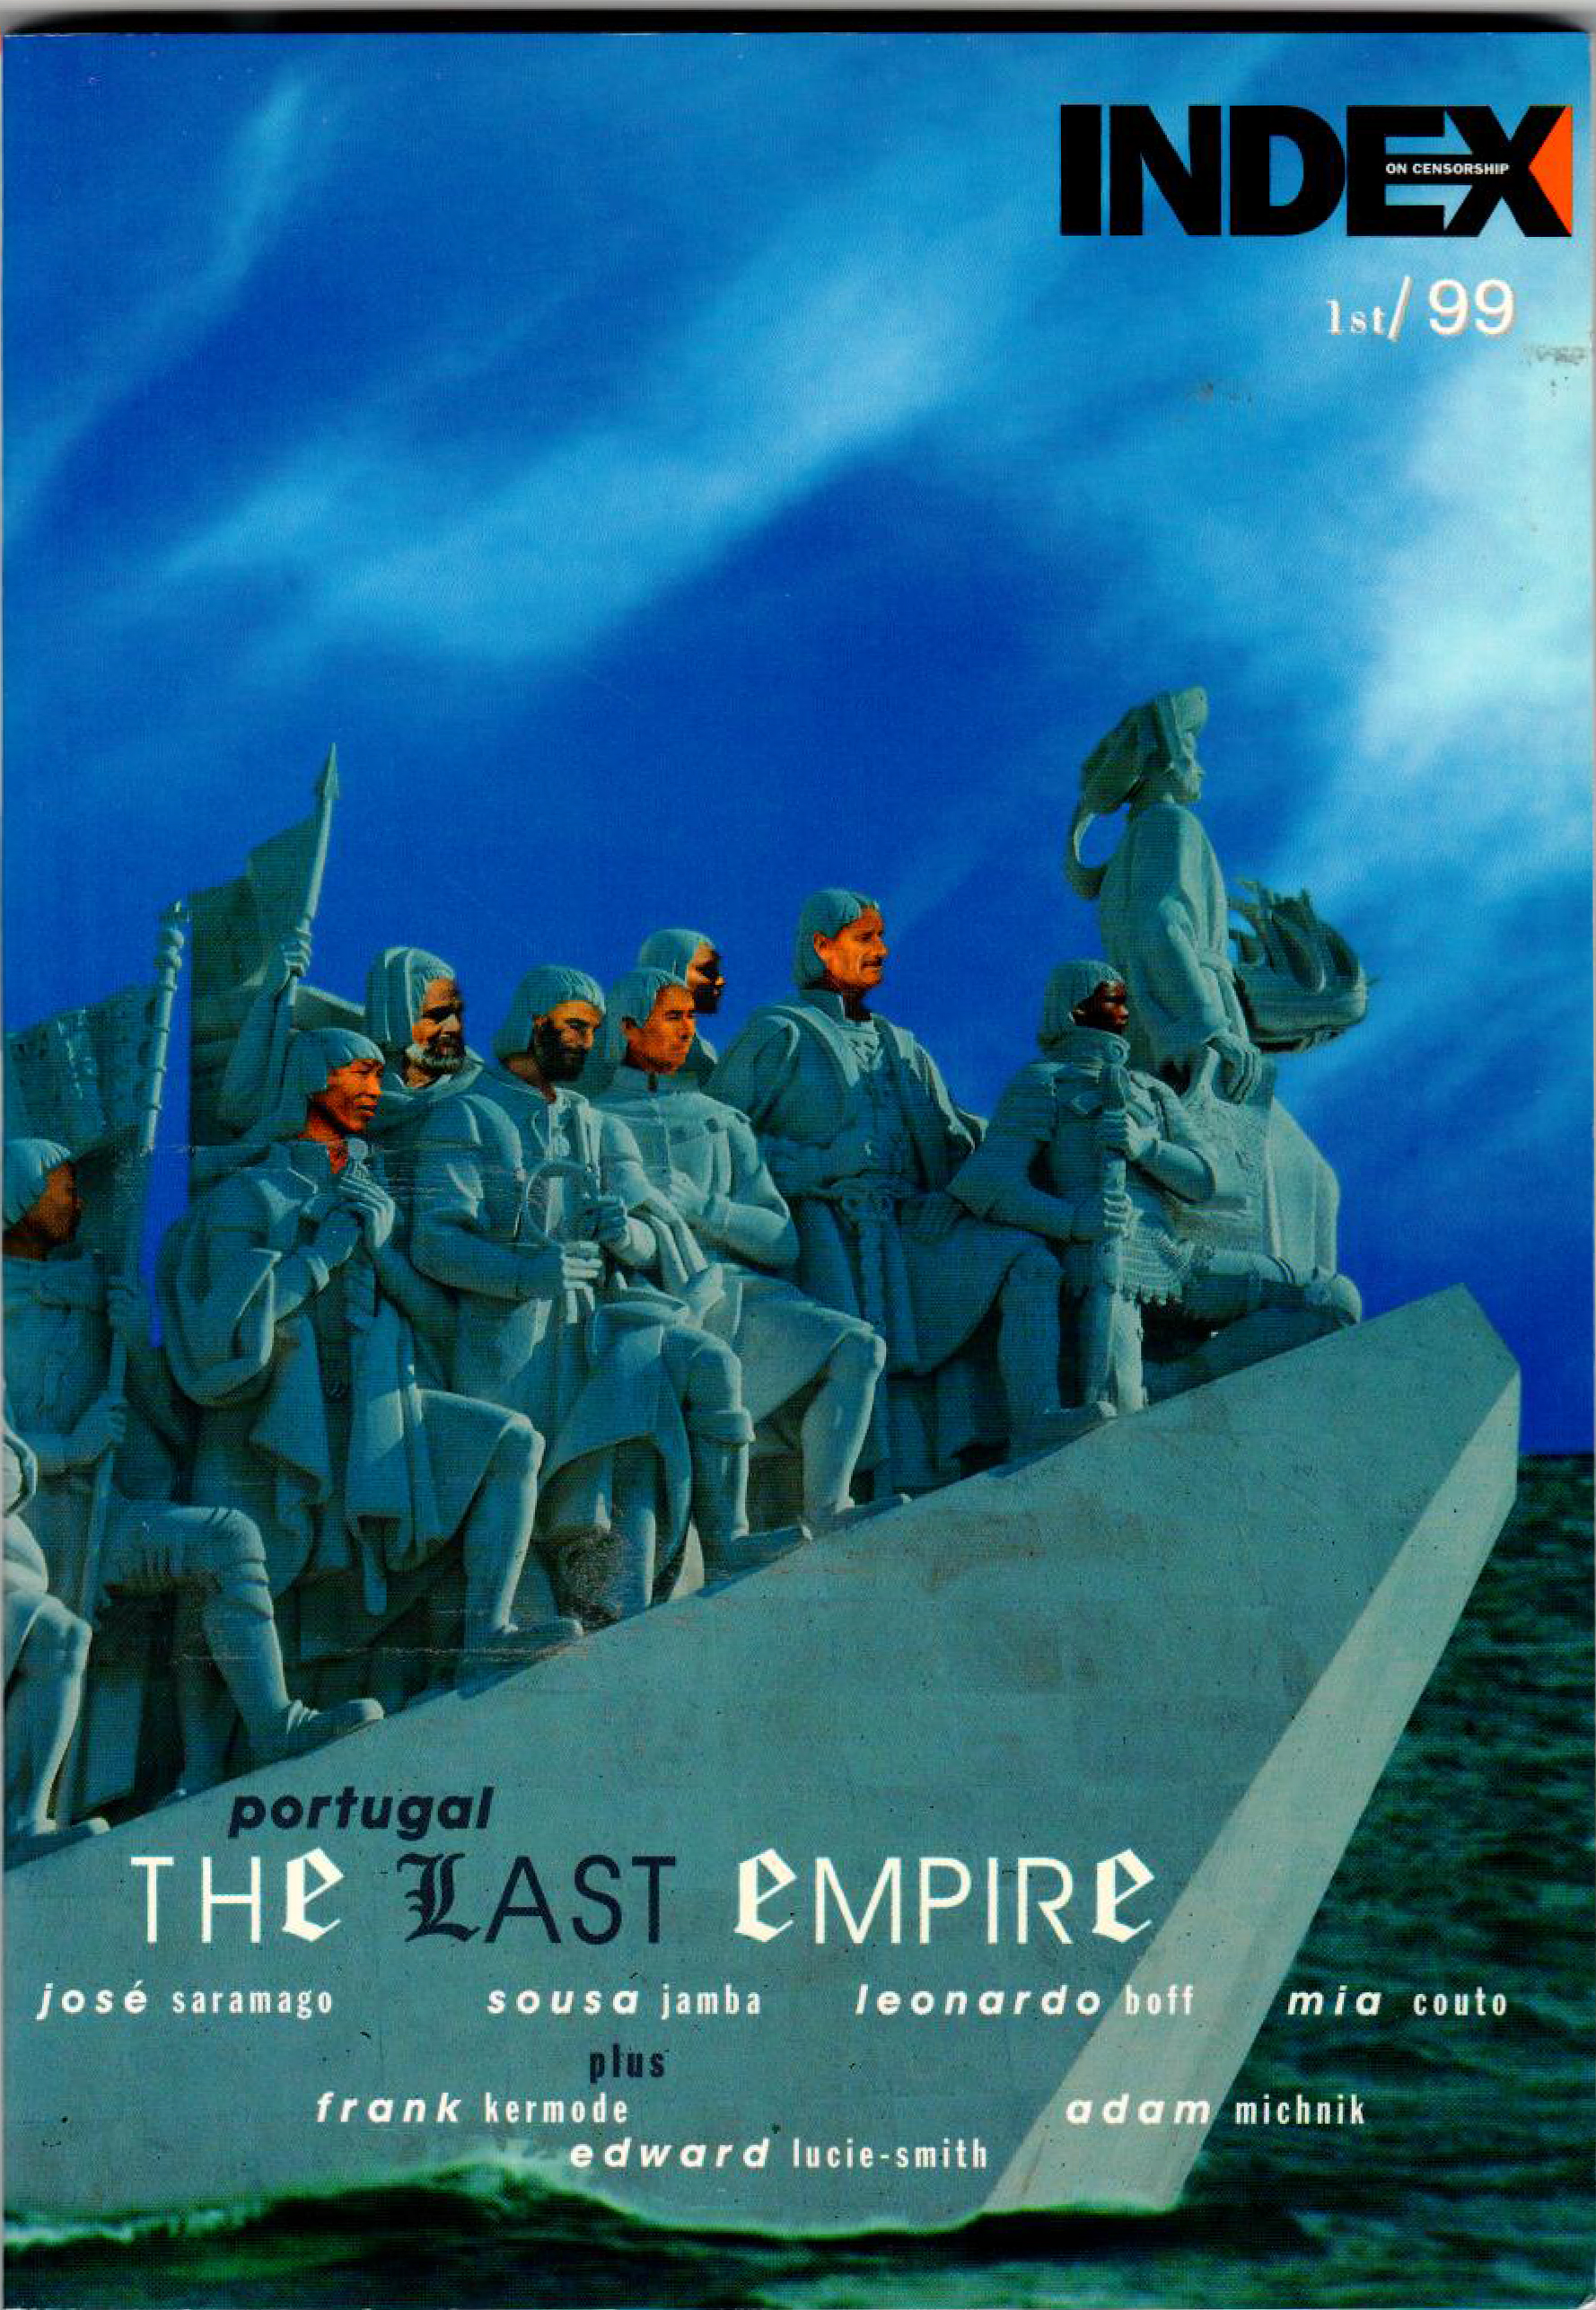 Portugal: The last empire